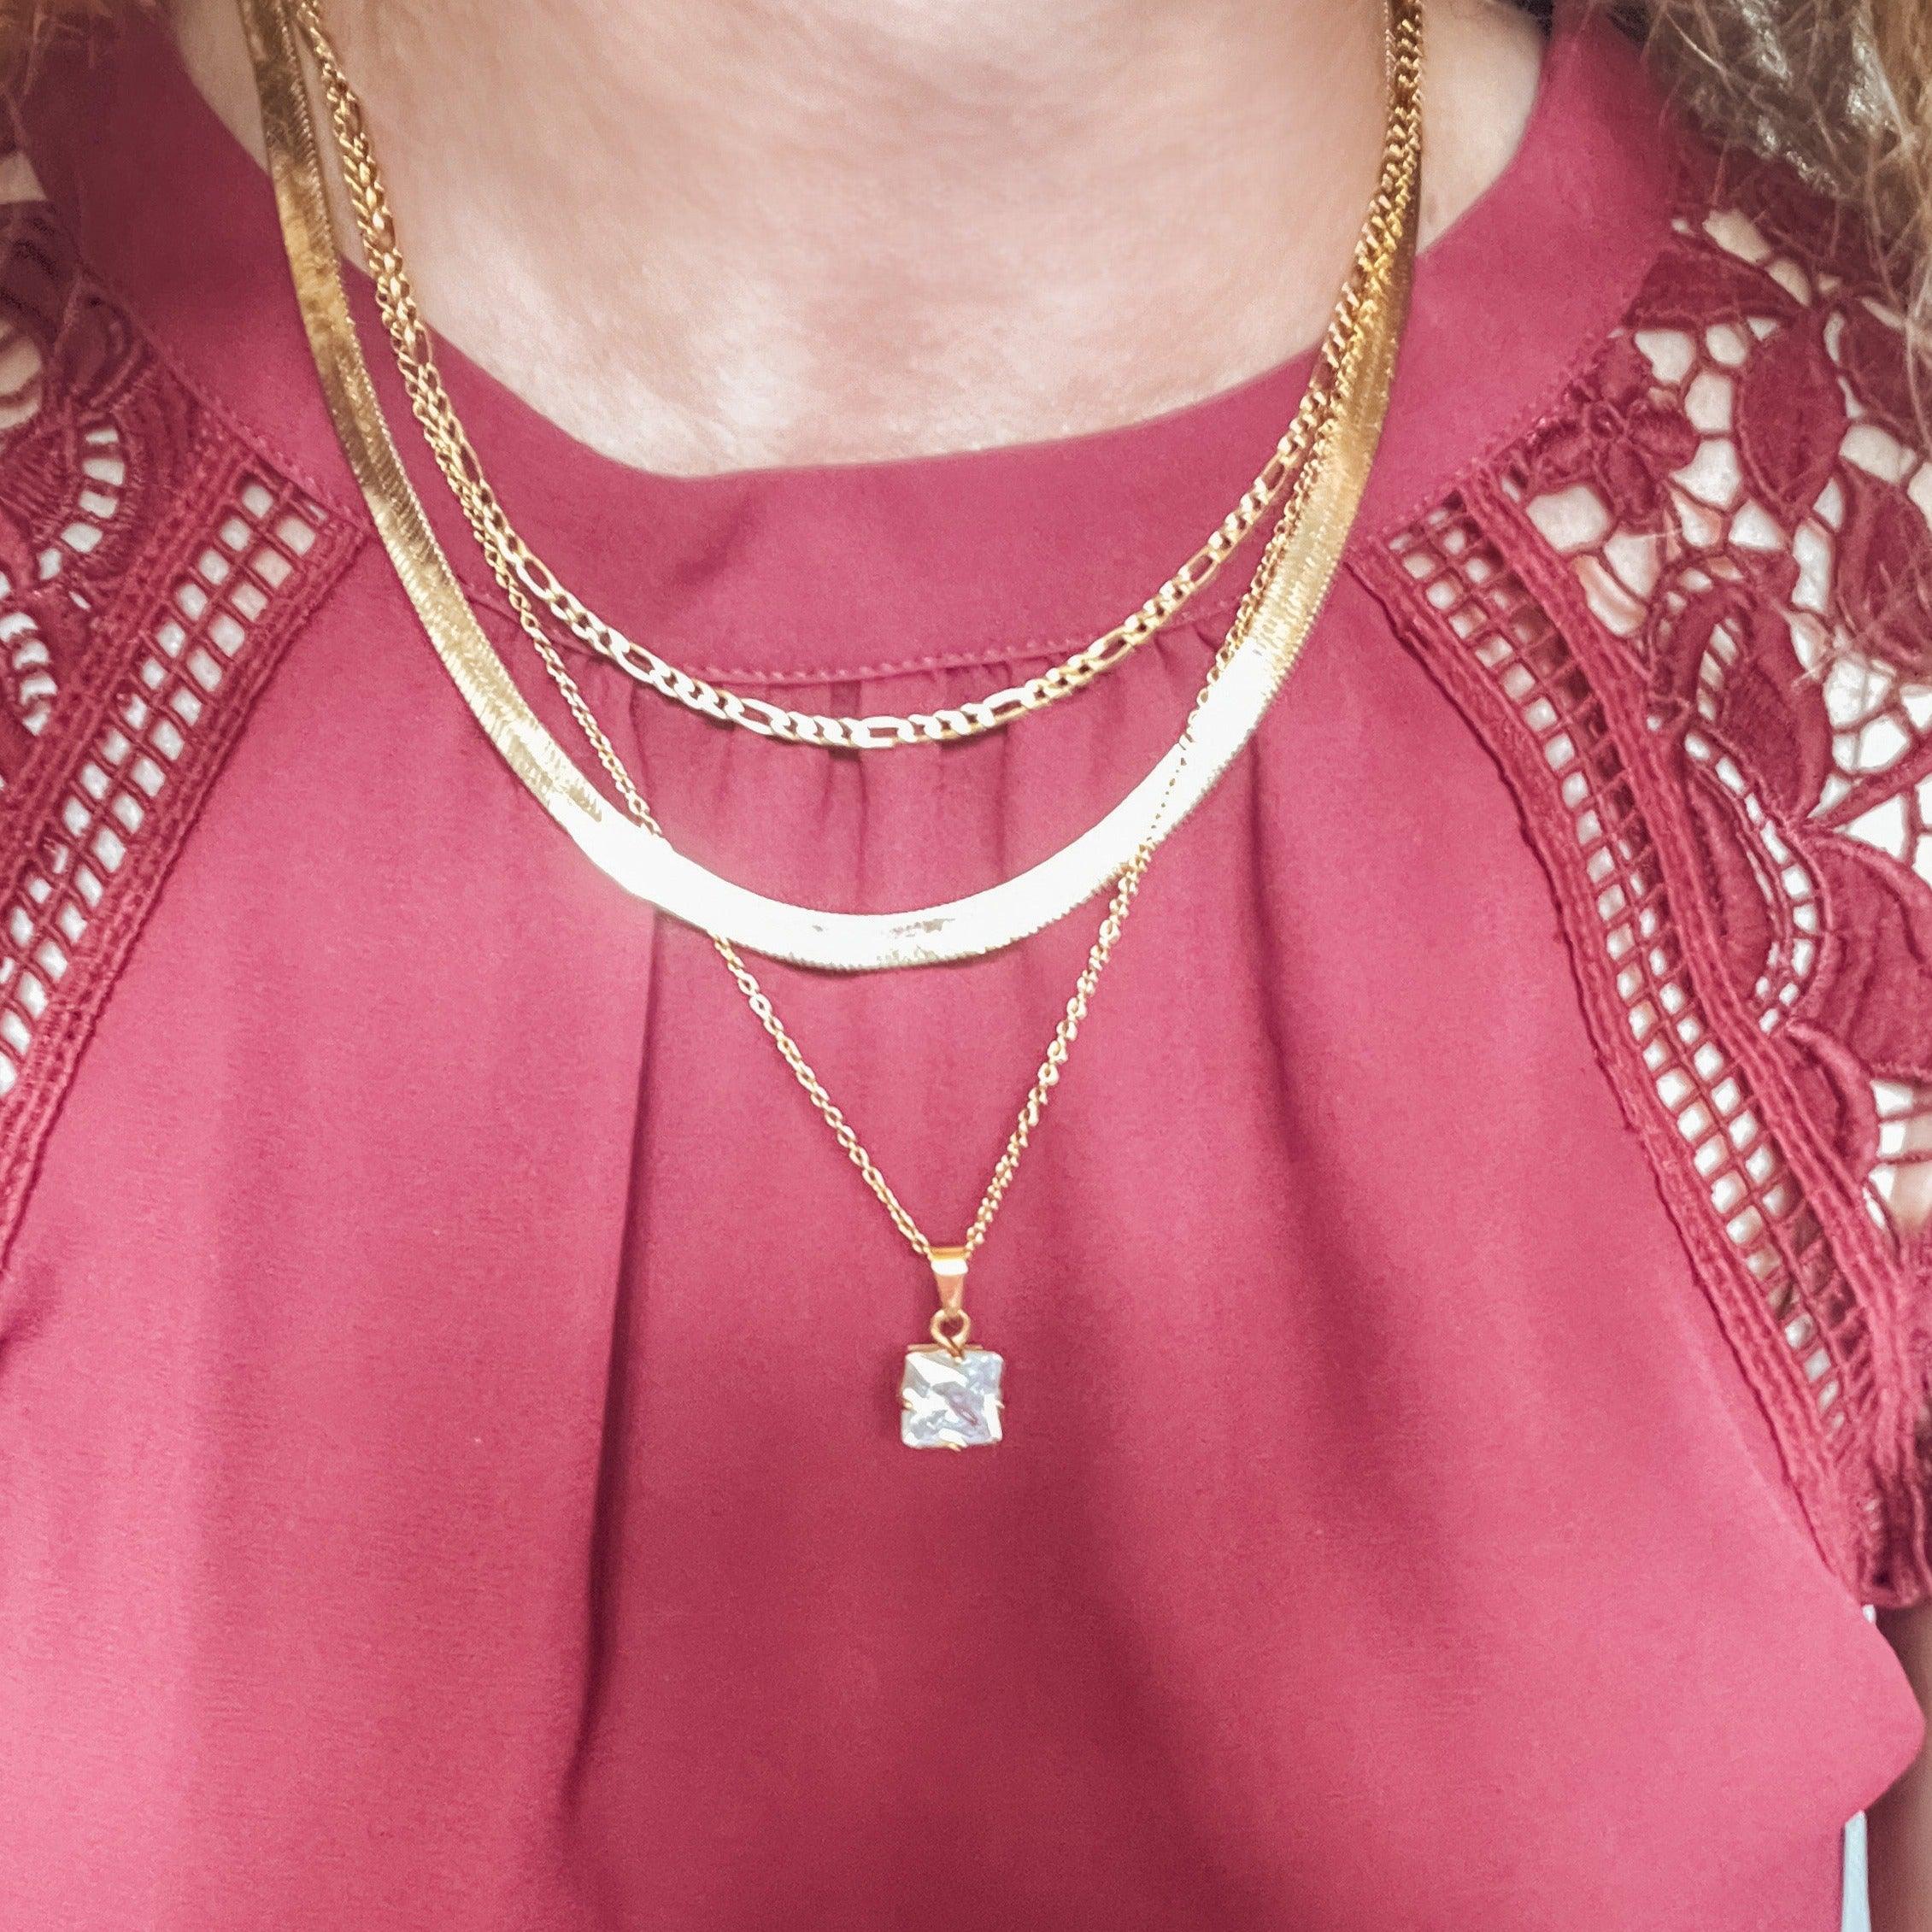 Sawyer Figaro Chain Necklace - Nanda Jewelry